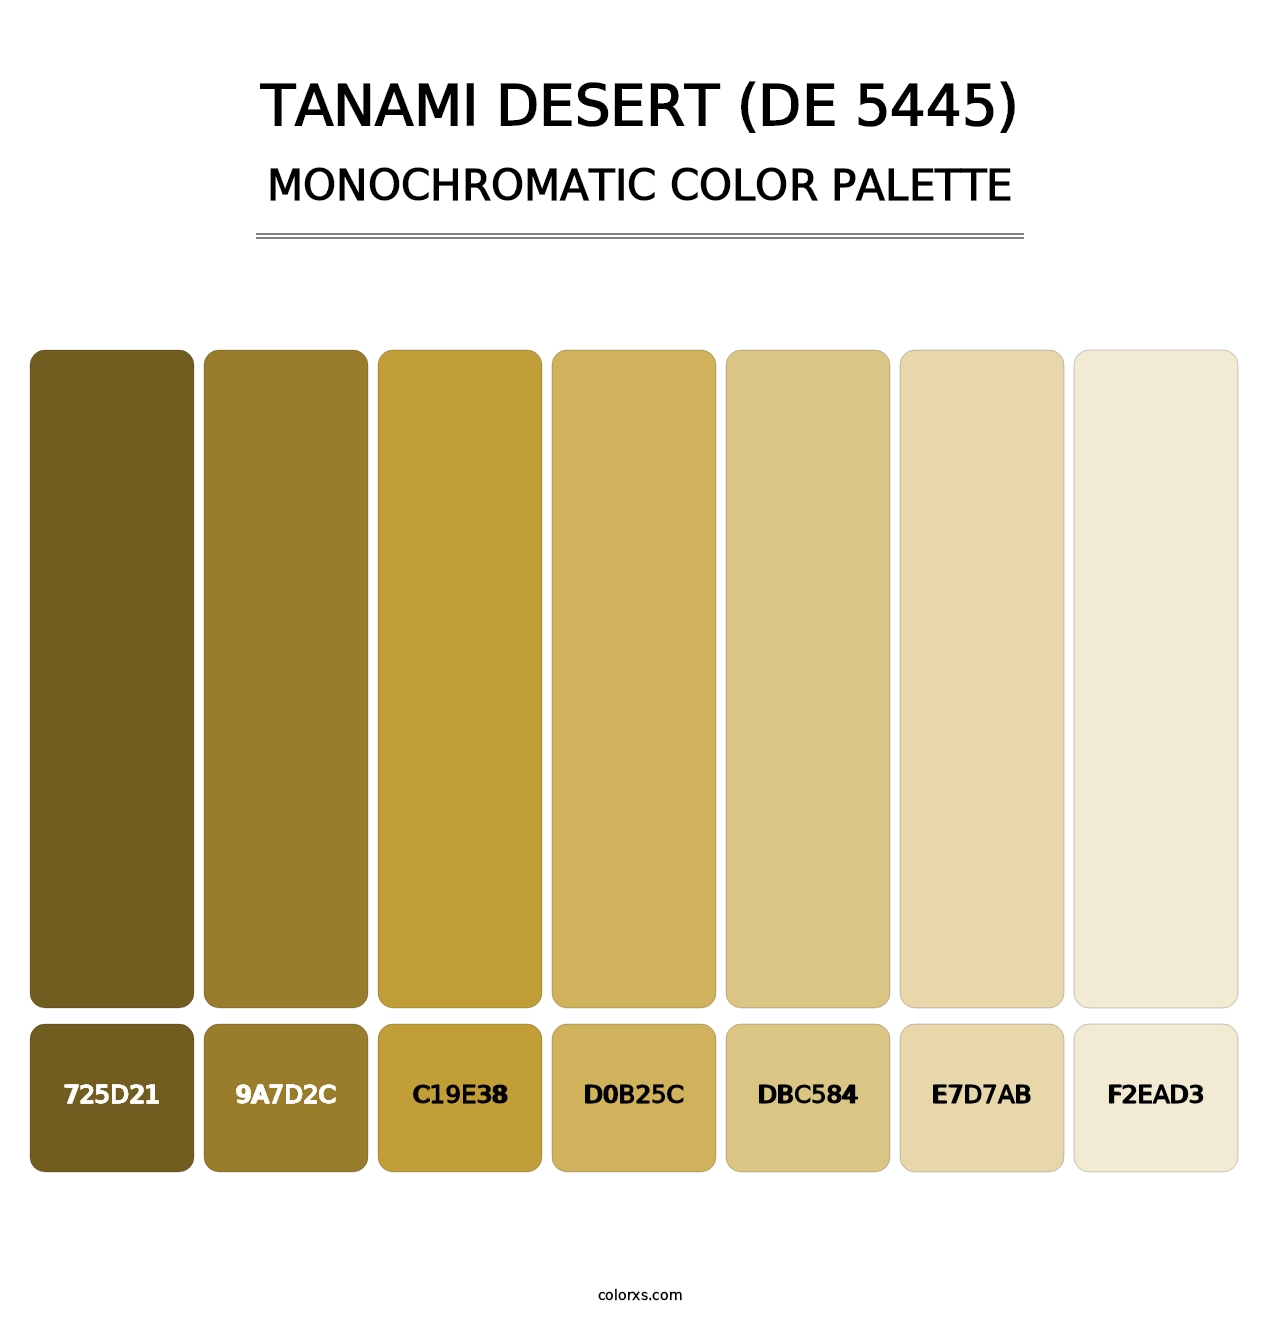 Tanami Desert (DE 5445) - Monochromatic Color Palette